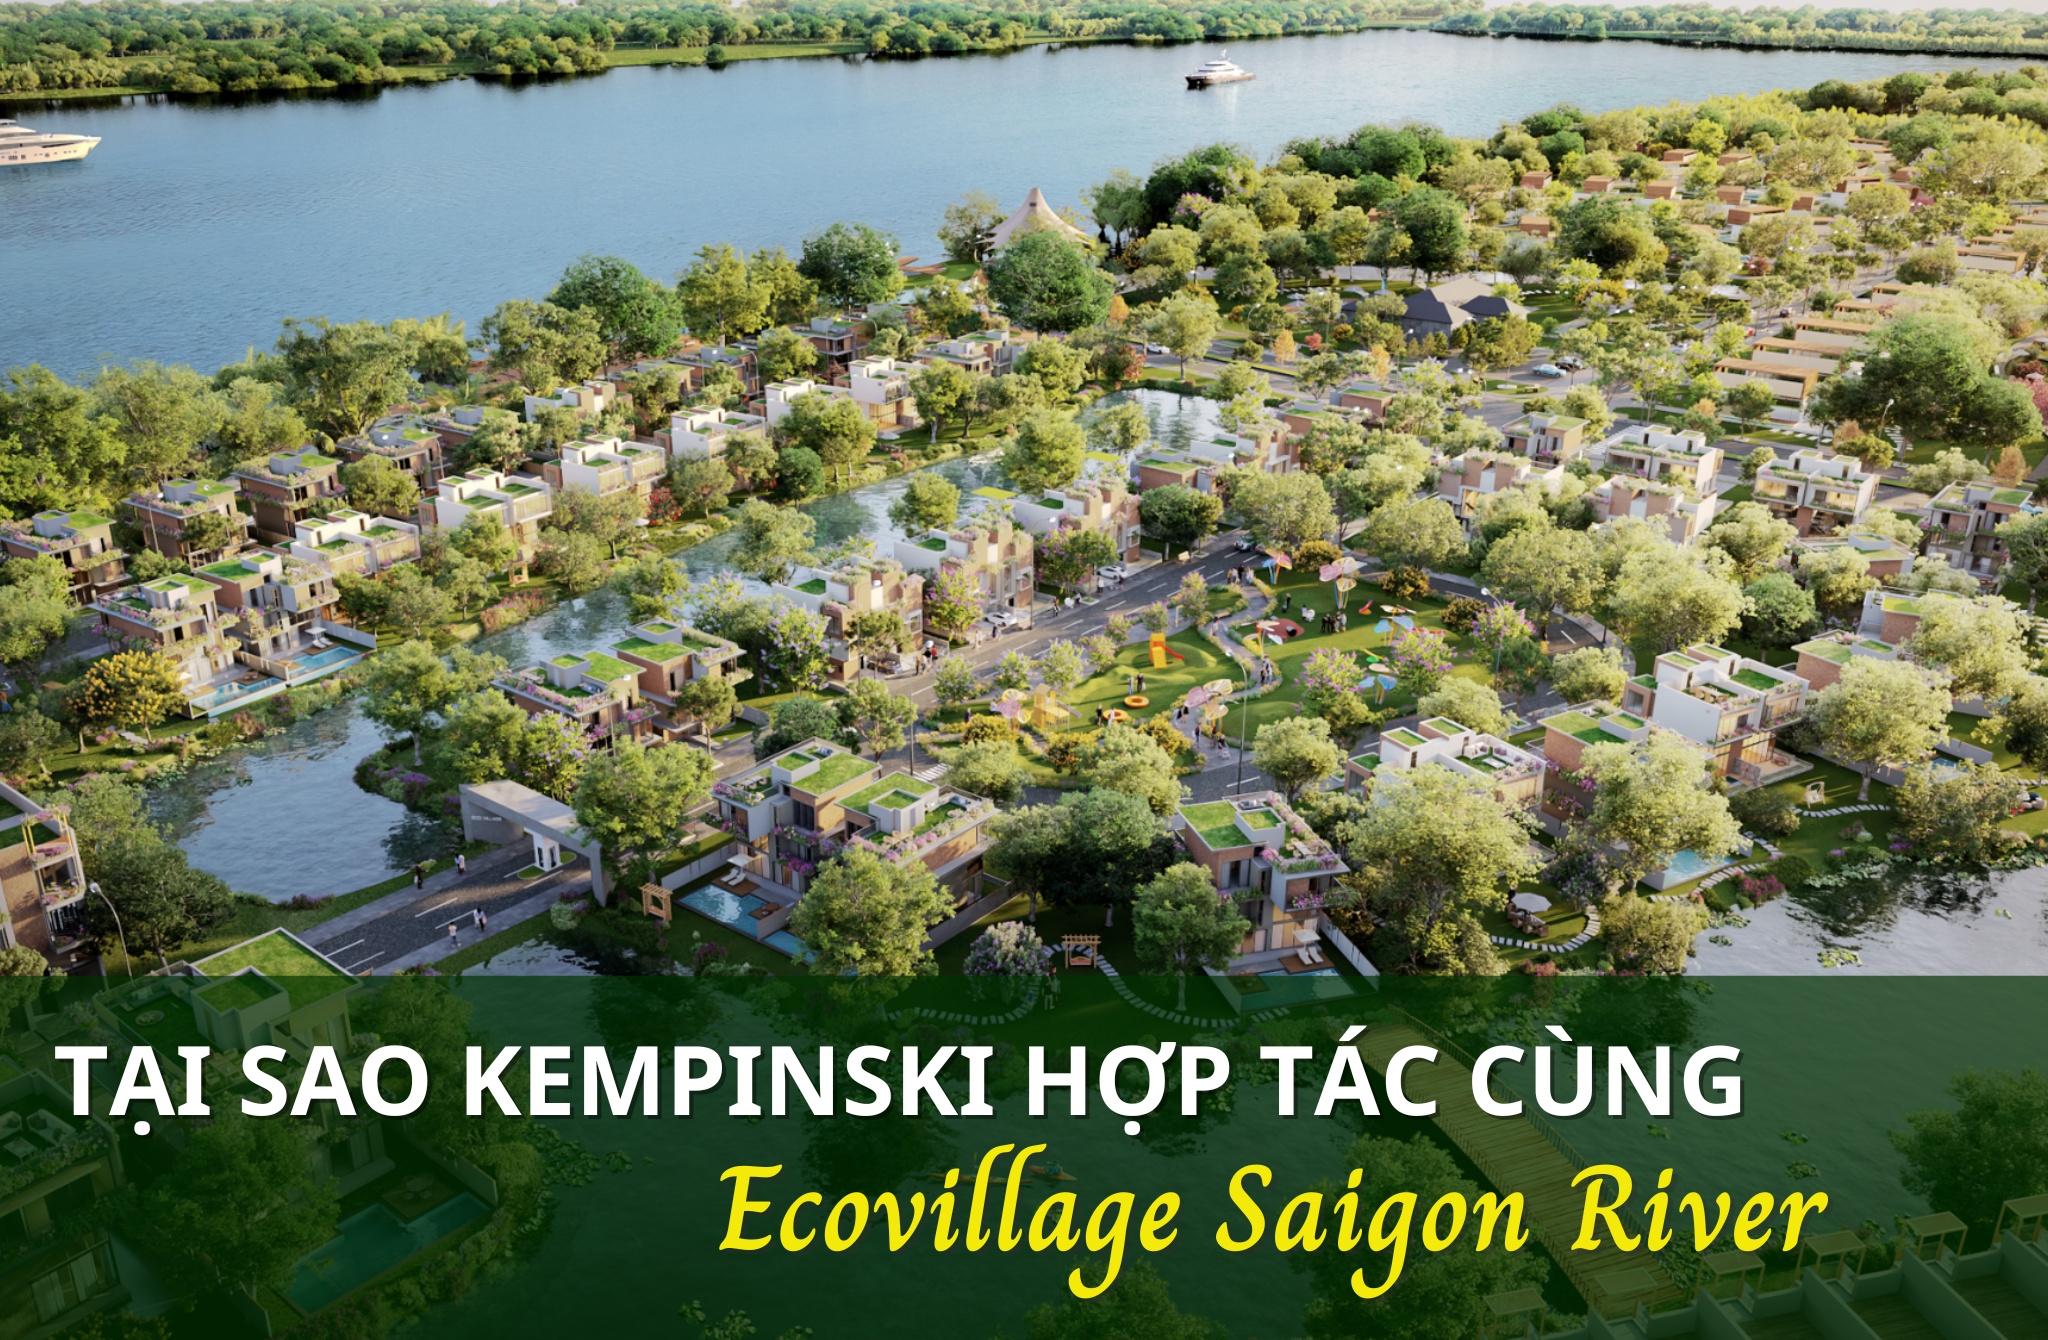 Tại sao Kempinski lại lựa chọn hợp tác cùng Ecovillage Saigon River